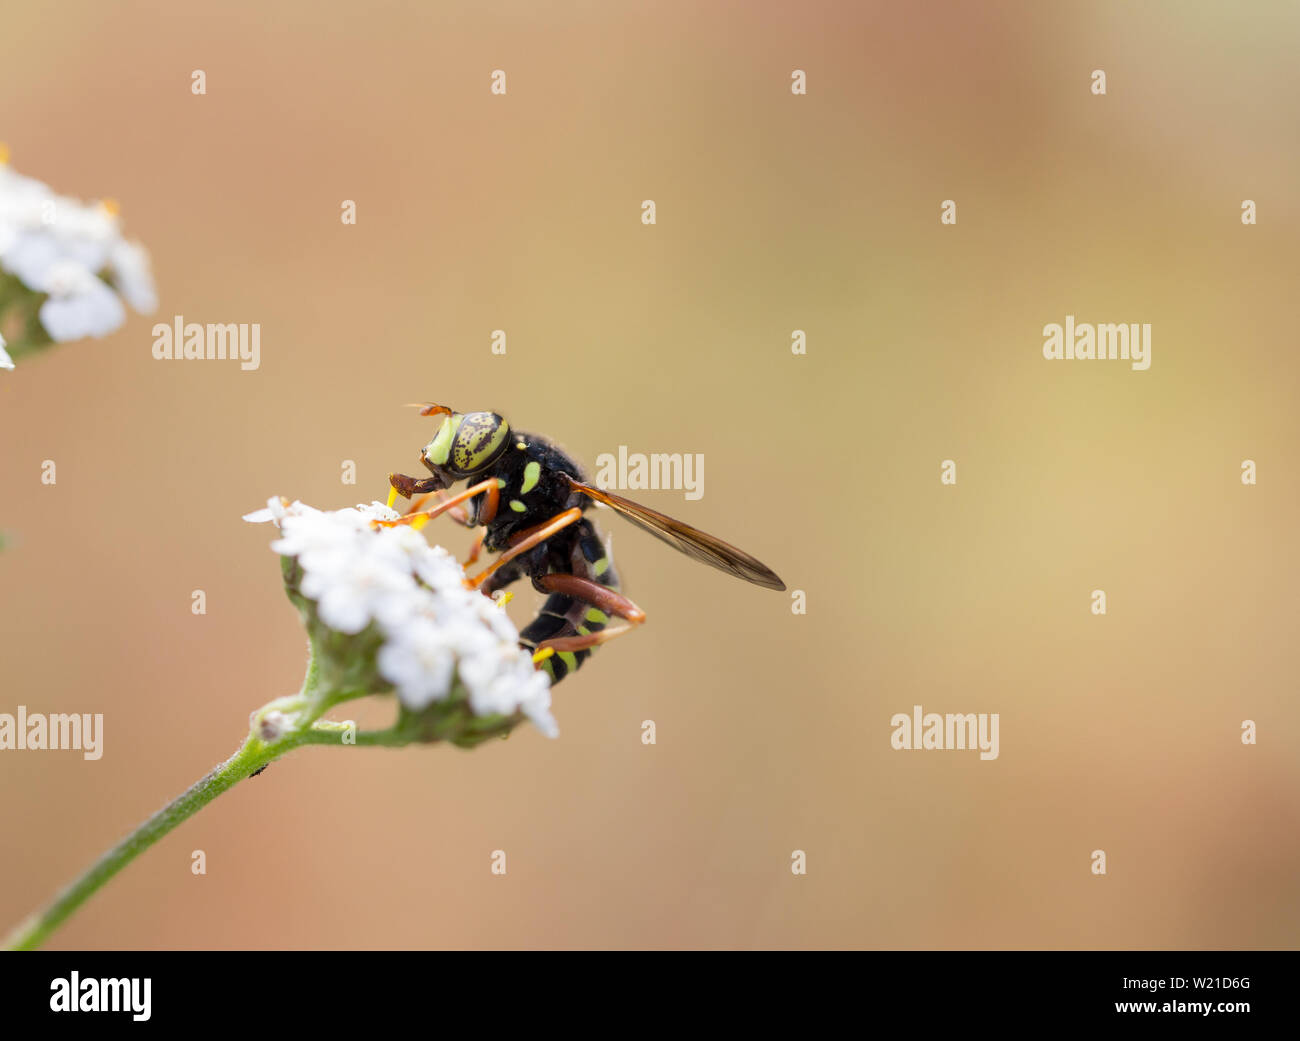 Wasp mimic hoverfly Stock Photo